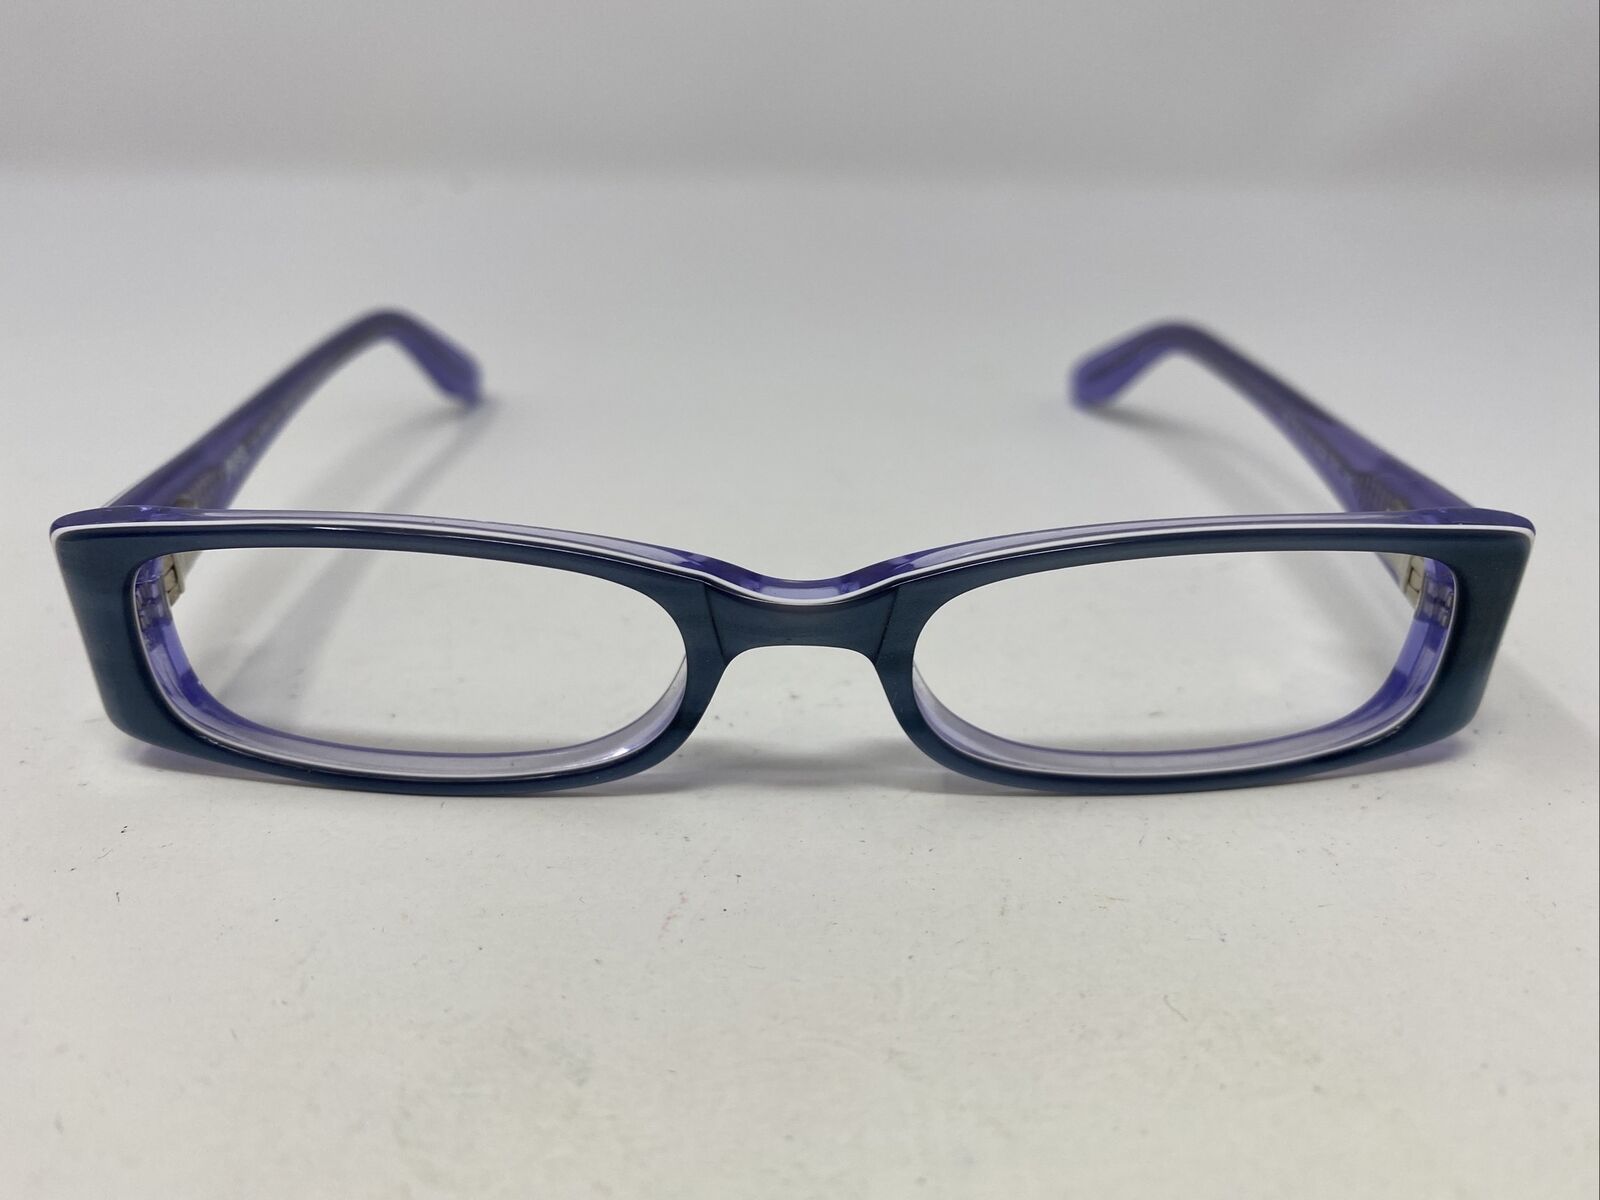 Moxie Girlz Eyeglasses Frame 2265 BLUE 37-16-130 Navy/Purple Full Rim XA73